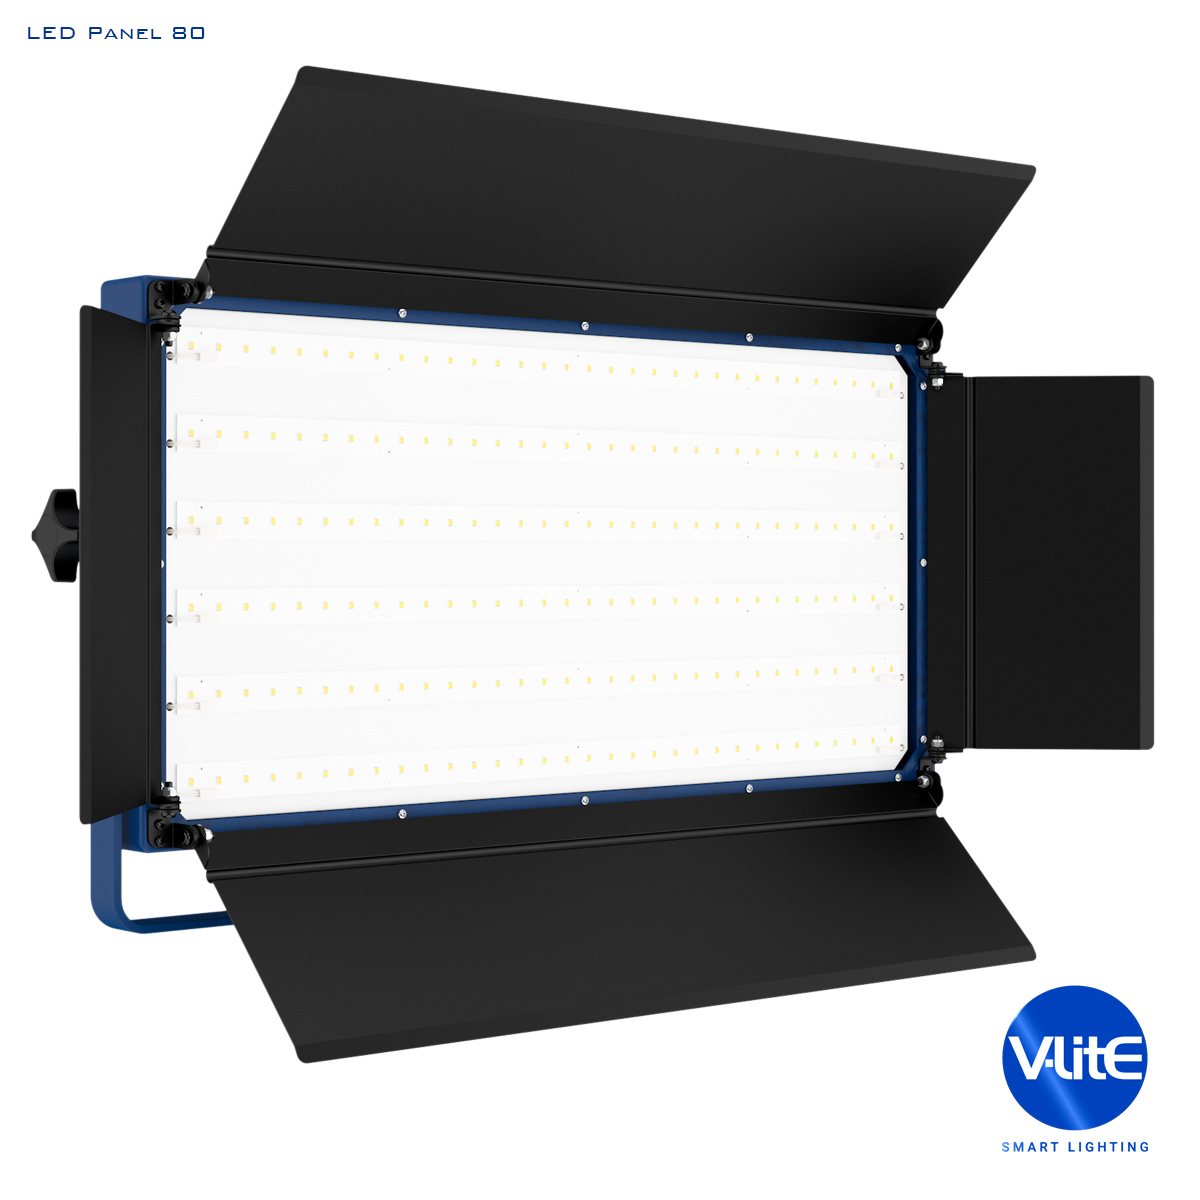 LED Panel 80 | V-Lite